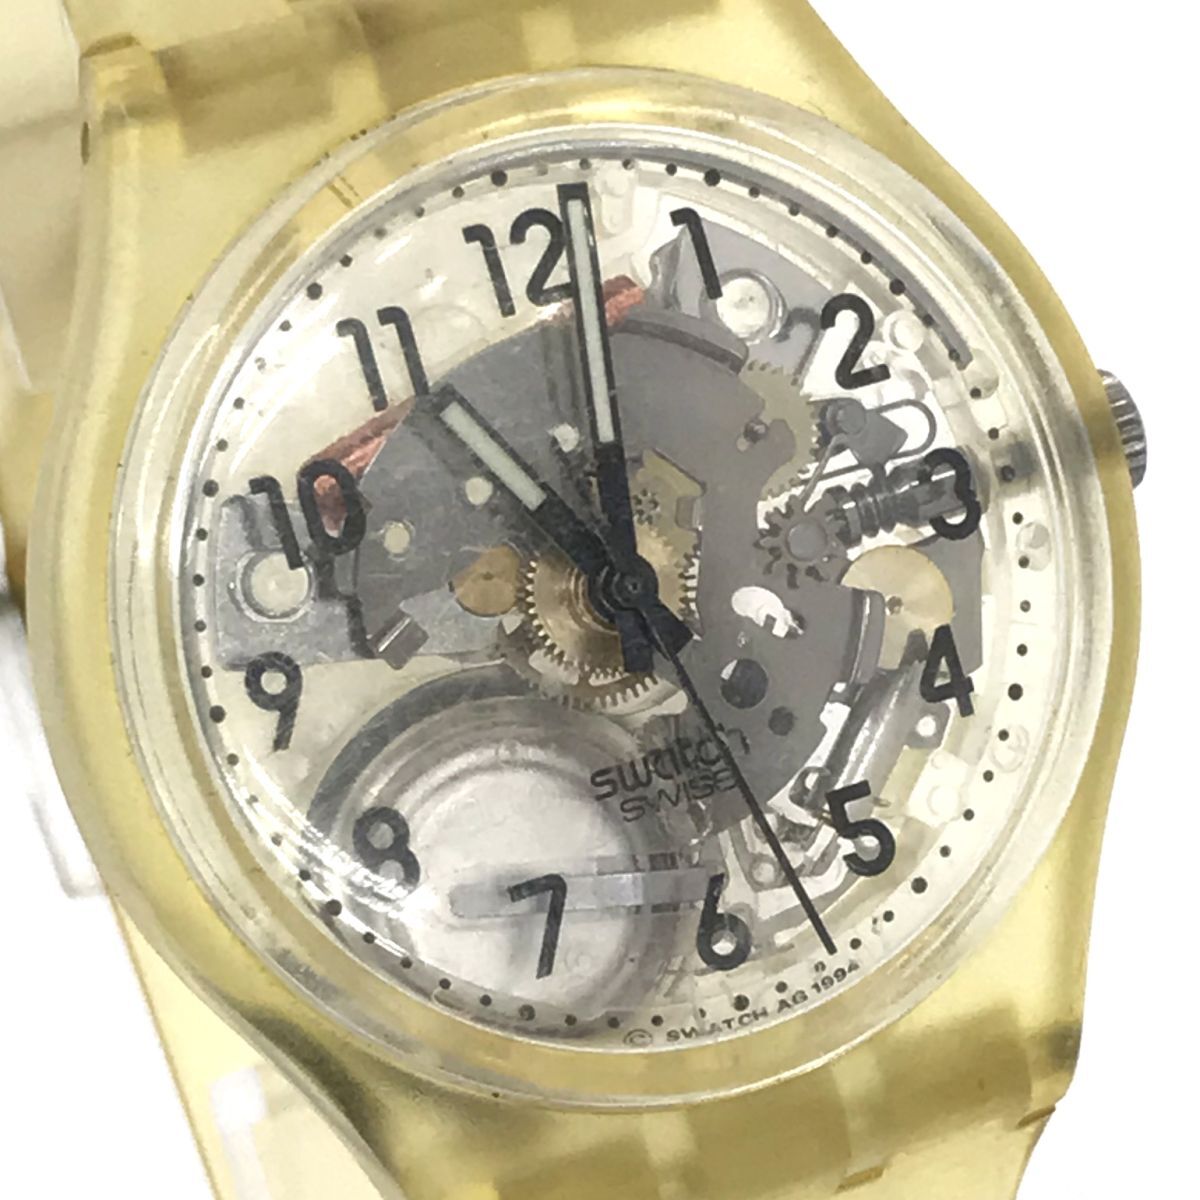 Swatch Swatch наручные часы кварц коллекция модный желтый желтый цвет каркас легкий легкий прозрачный прозрачный батарейка заменен рабочее состояние подтверждено 